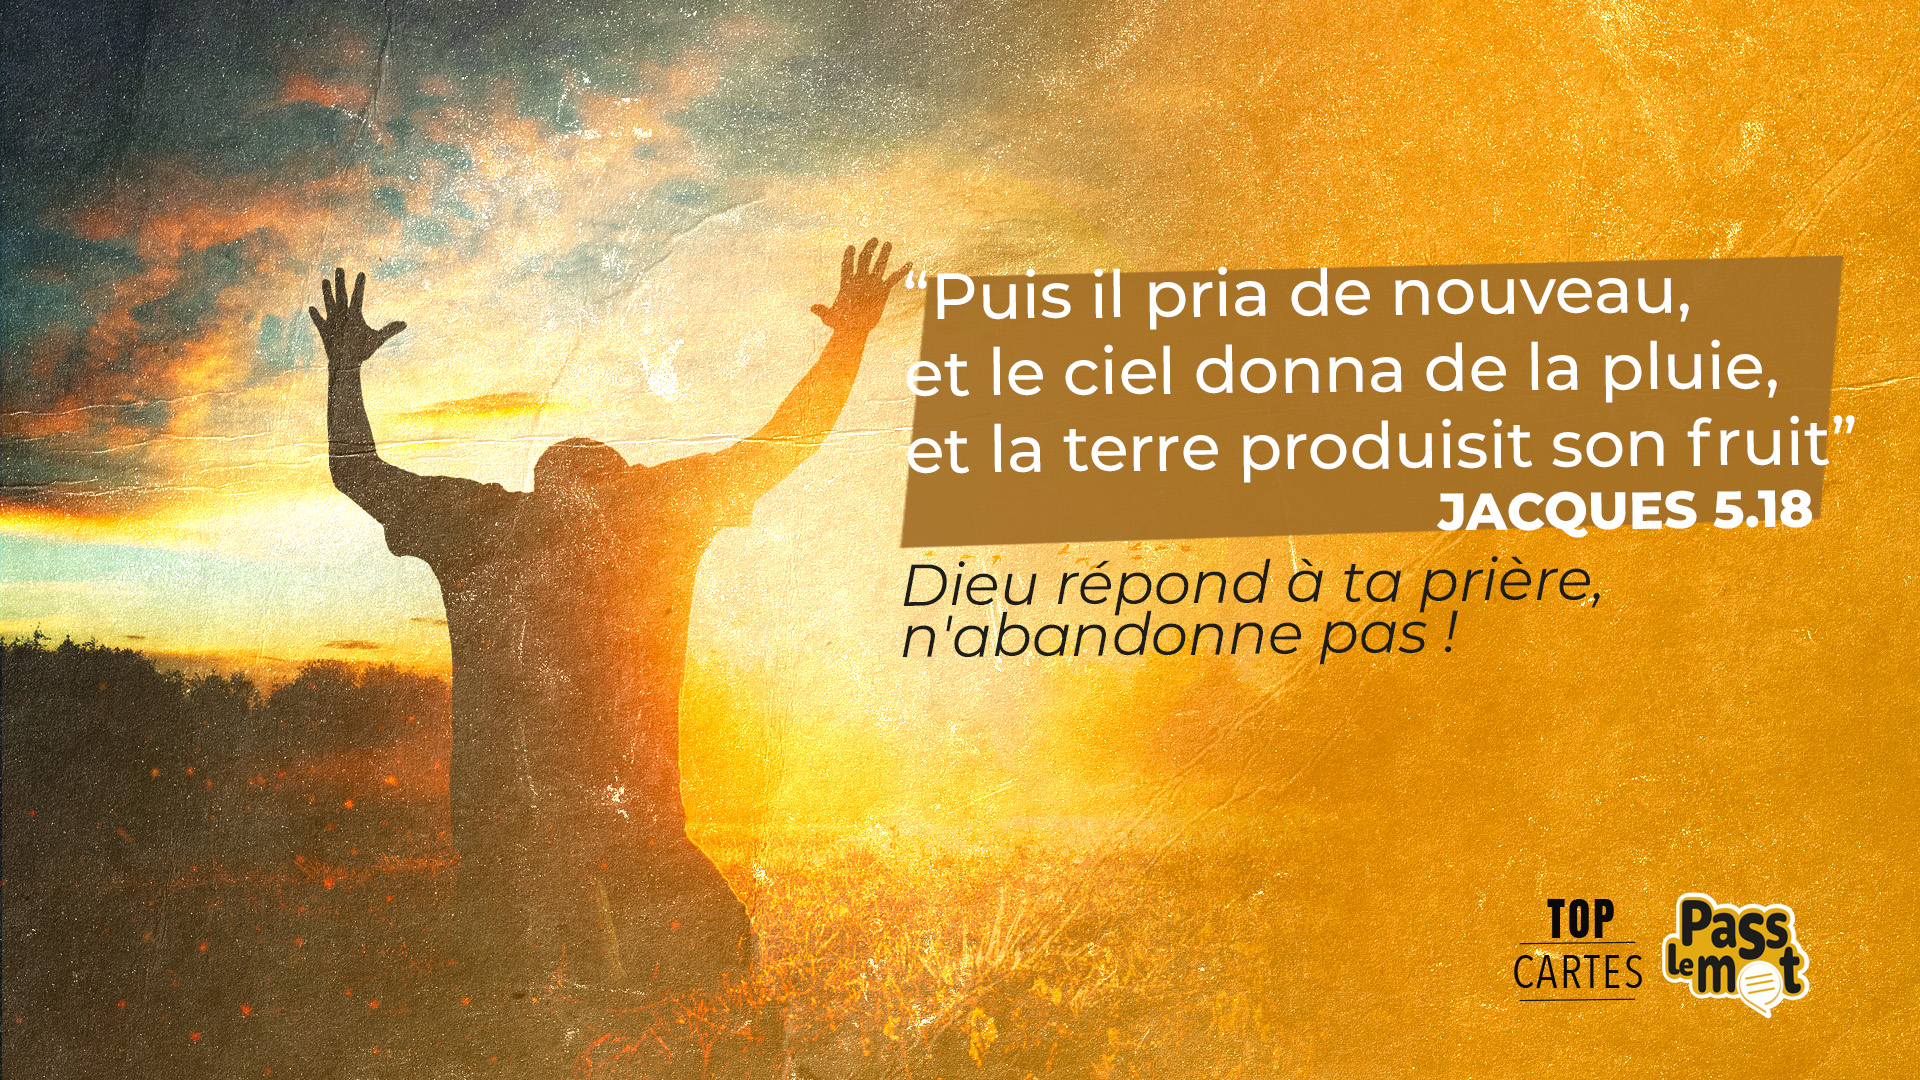 Jacques 5.18